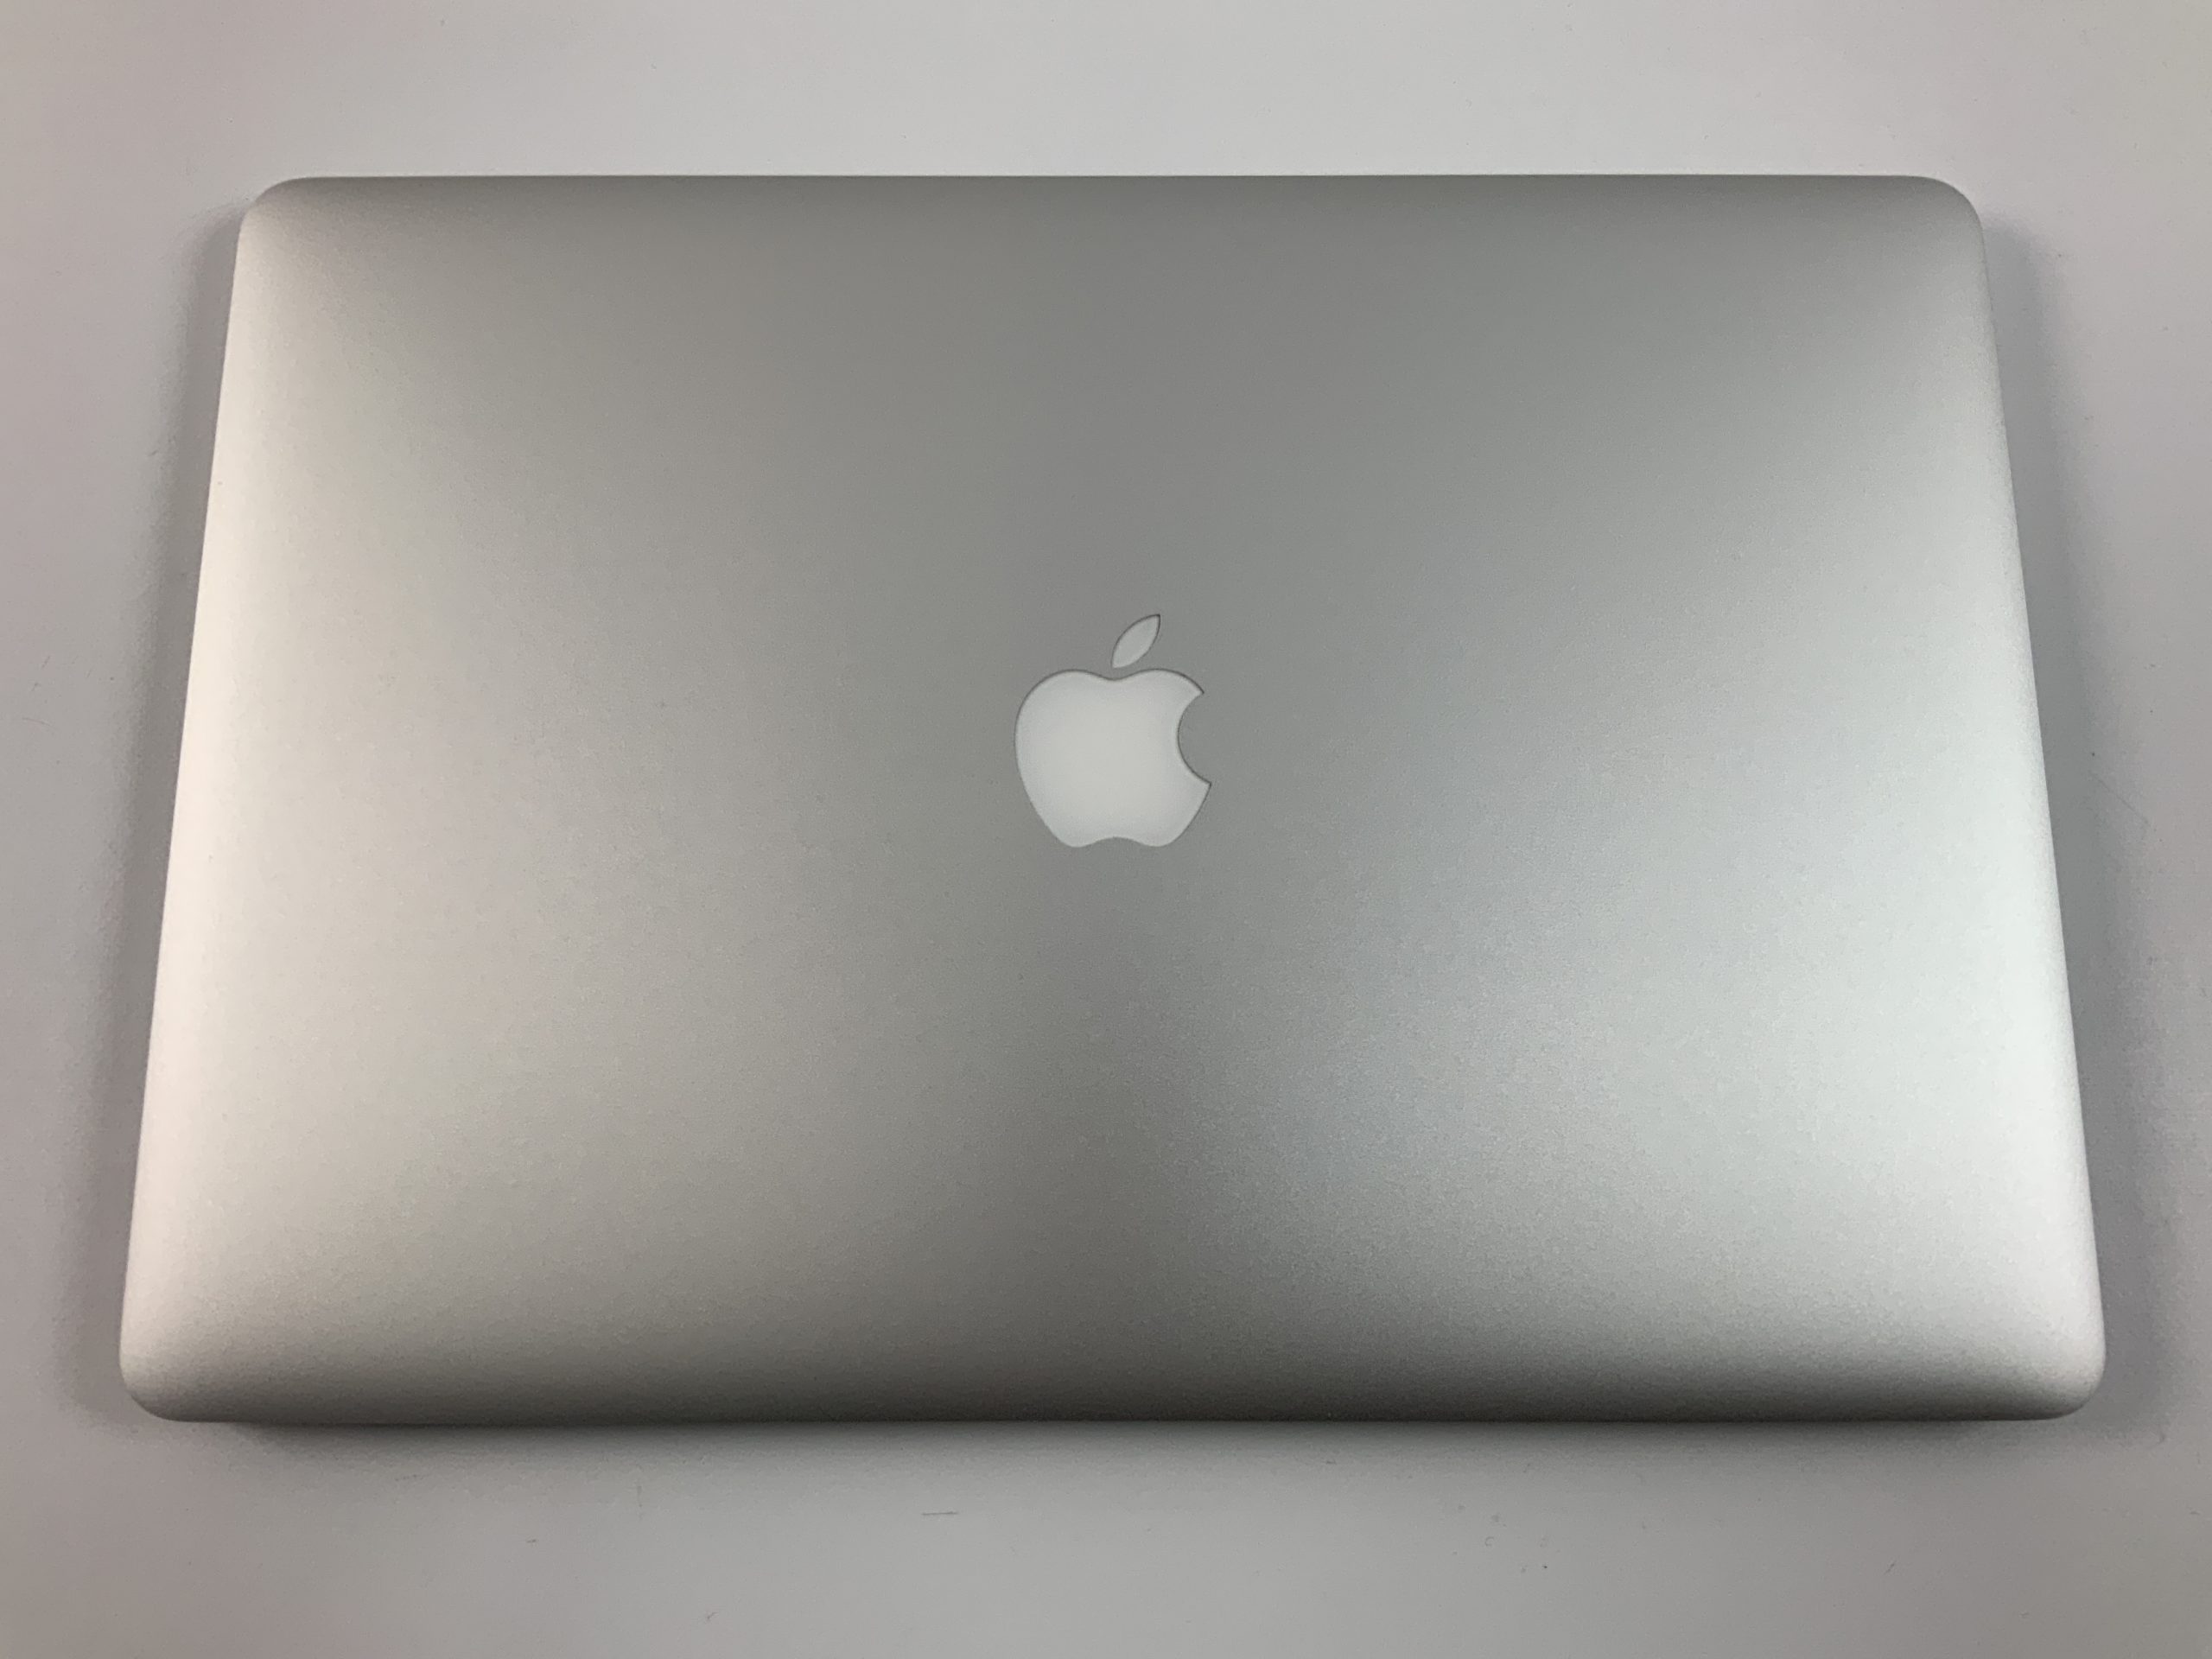 MacBook Pro Retina 15" Mid 2015 (Intel Quad-Core i7 2.8 GHz 16 GB RAM 512 GB SSD), Intel Quad-Core i7 2.8 GHz, 16 GB RAM, 512 GB SSD, immagine 2